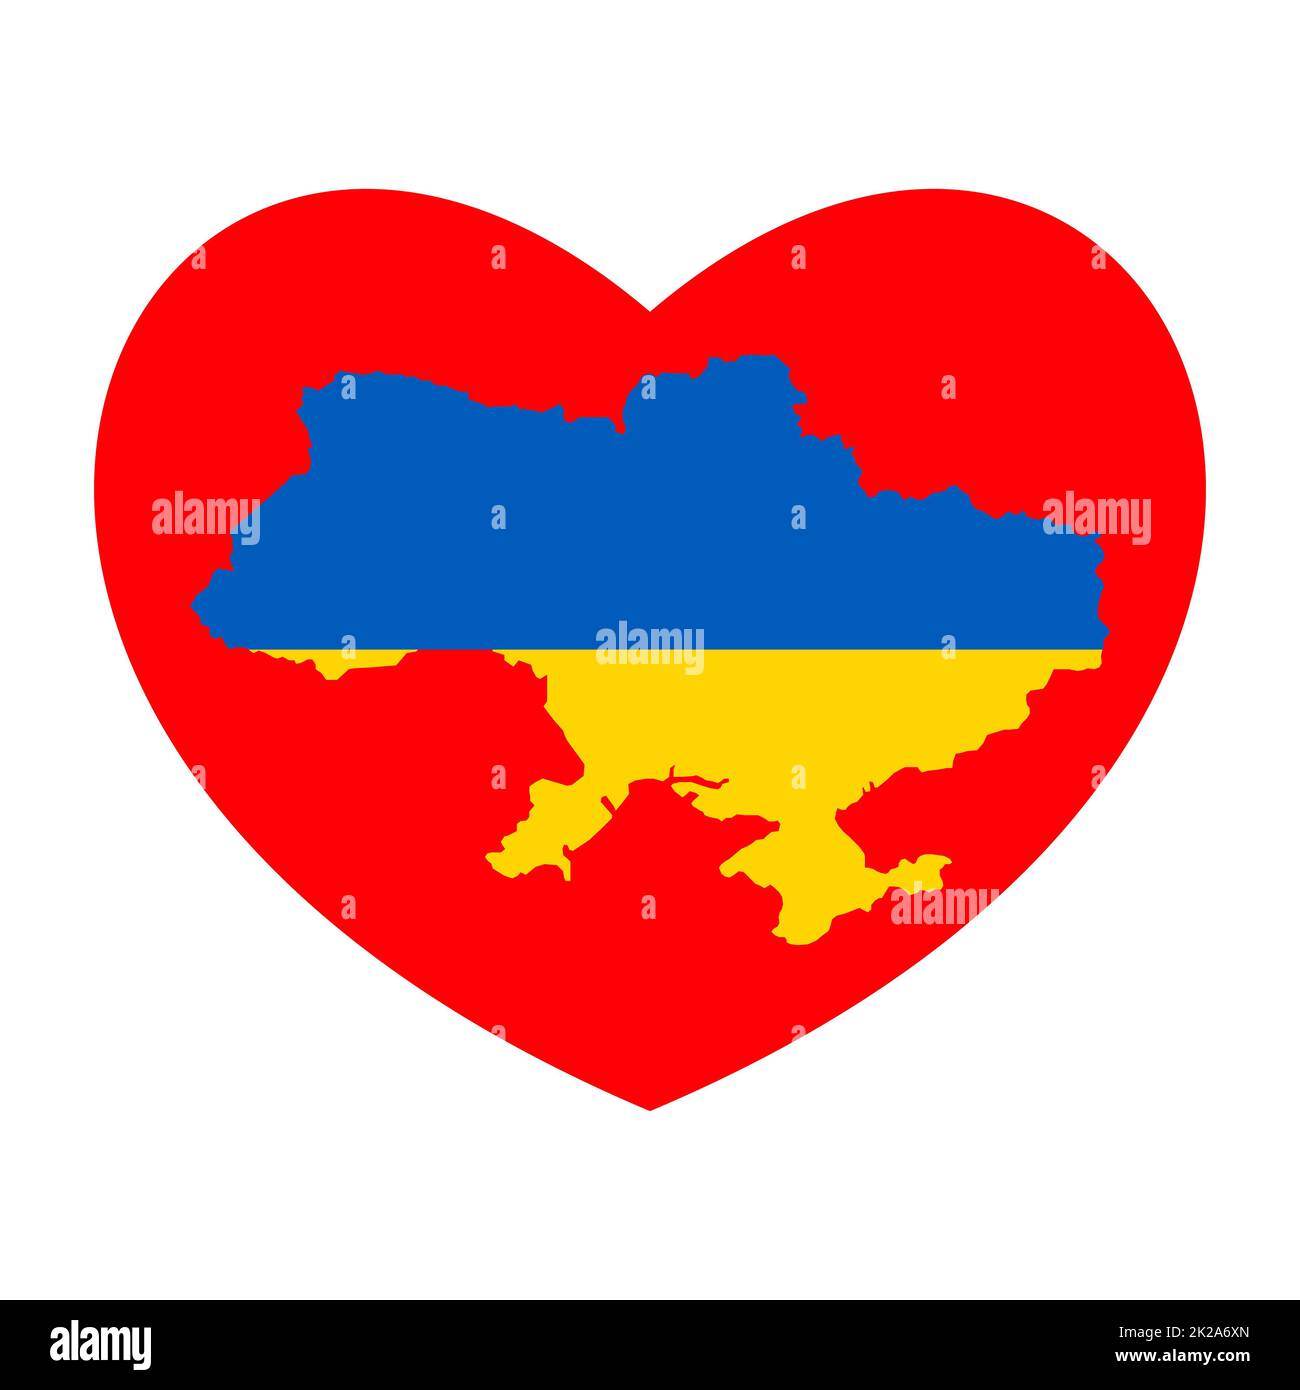 Karte mit rotem Herz und Ukraine. Abstrakte ukrainische blaue gelbe Flagge mit Liebessymbol. Konzeptionelle Idee - mit der Ukraine im Herzen. Patriotische Unterstützung des Landes während der Besatzung. Bete für die ukraine. Stockfoto